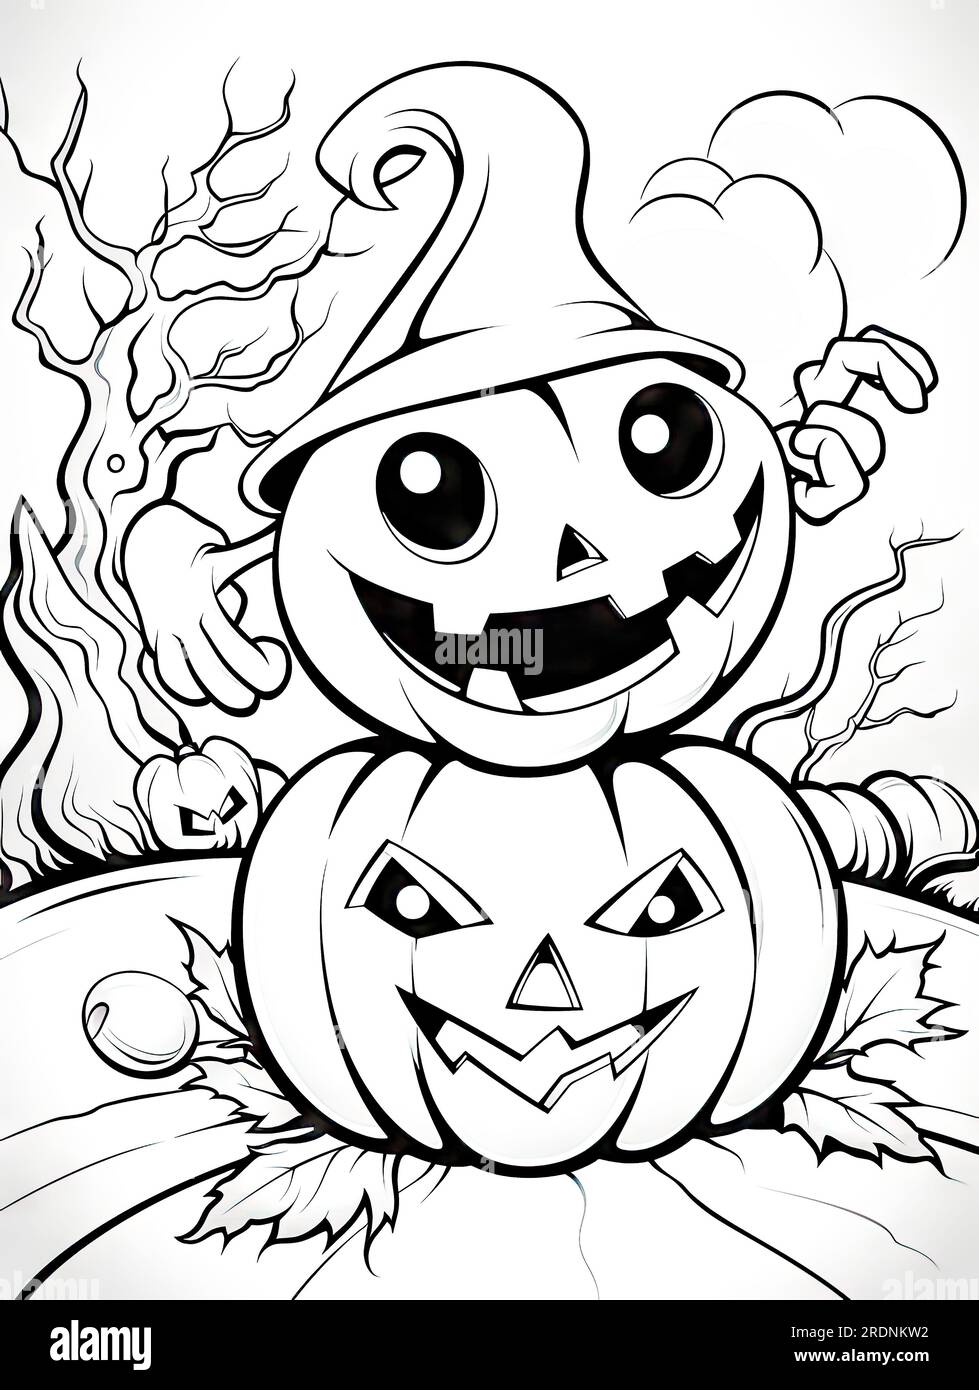 Resultado de imagem para desenhos de halloween  Pumpkin coloring pages,  Halloween pumpkin coloring pages, Halloween coloring pages printable